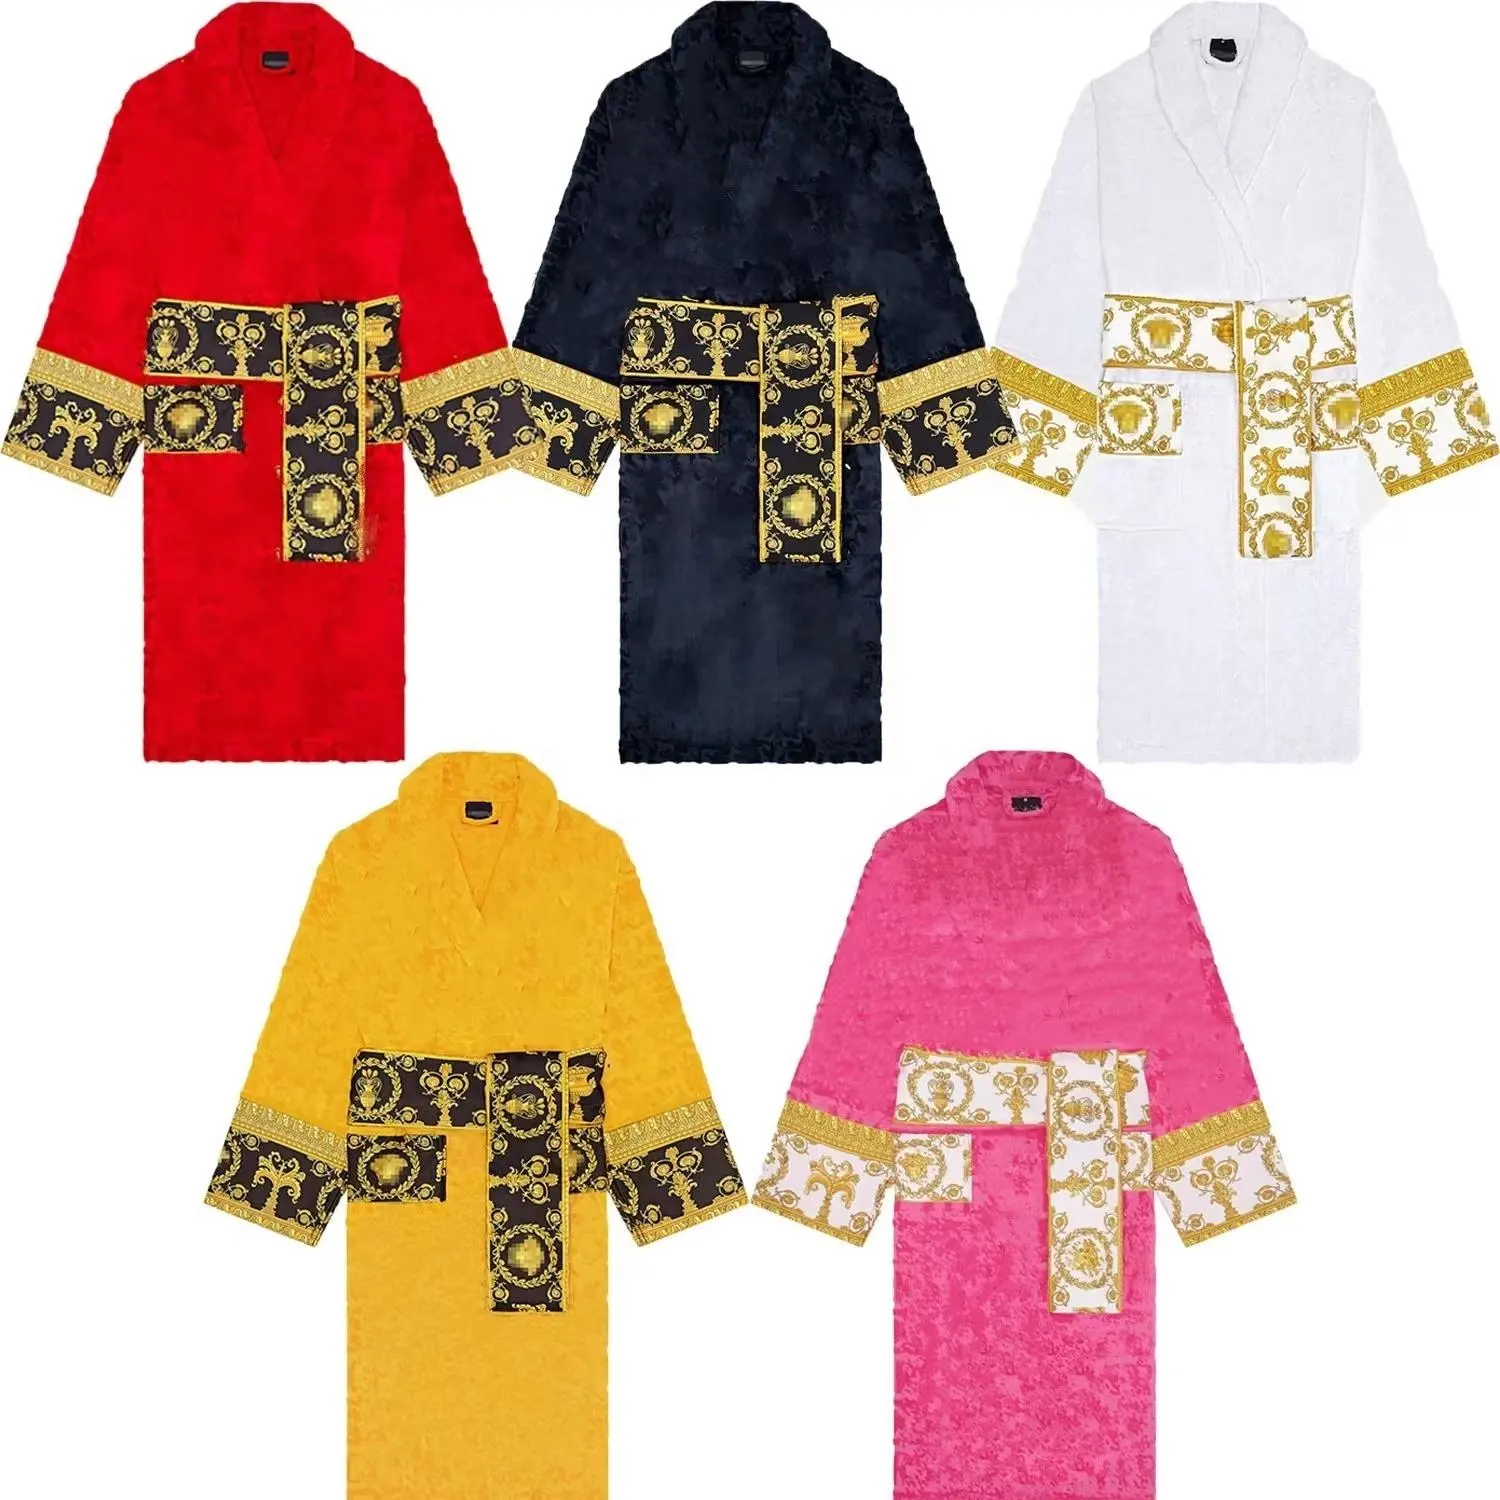 Noël hommes chemise de nuit Kimono peignoir Robe corail polaire déshabillé Lingerie intime marque de luxe vêtements de nuit pyjamas peignoir